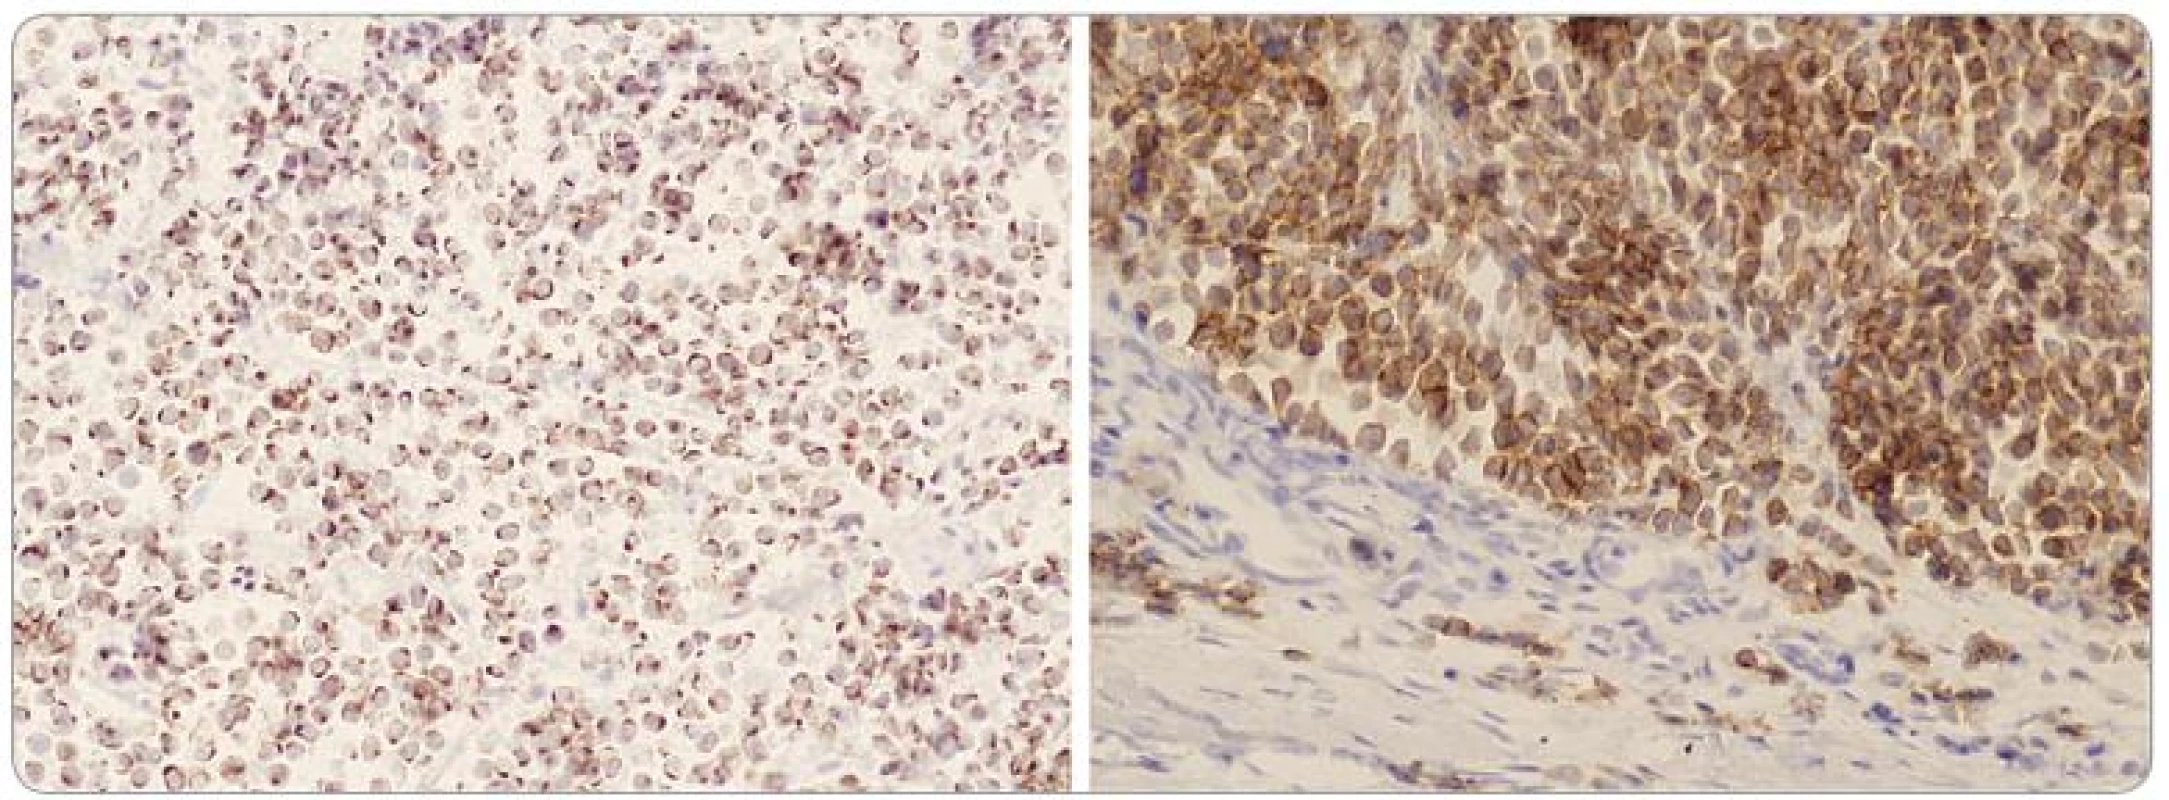 Buňky tumoru s výraznou dot-like paranukleární pozitivitou cytokeratinu 20 (vlevo, x 200) a membránovou pozitivitou CD 56 (vpravo, x 200).